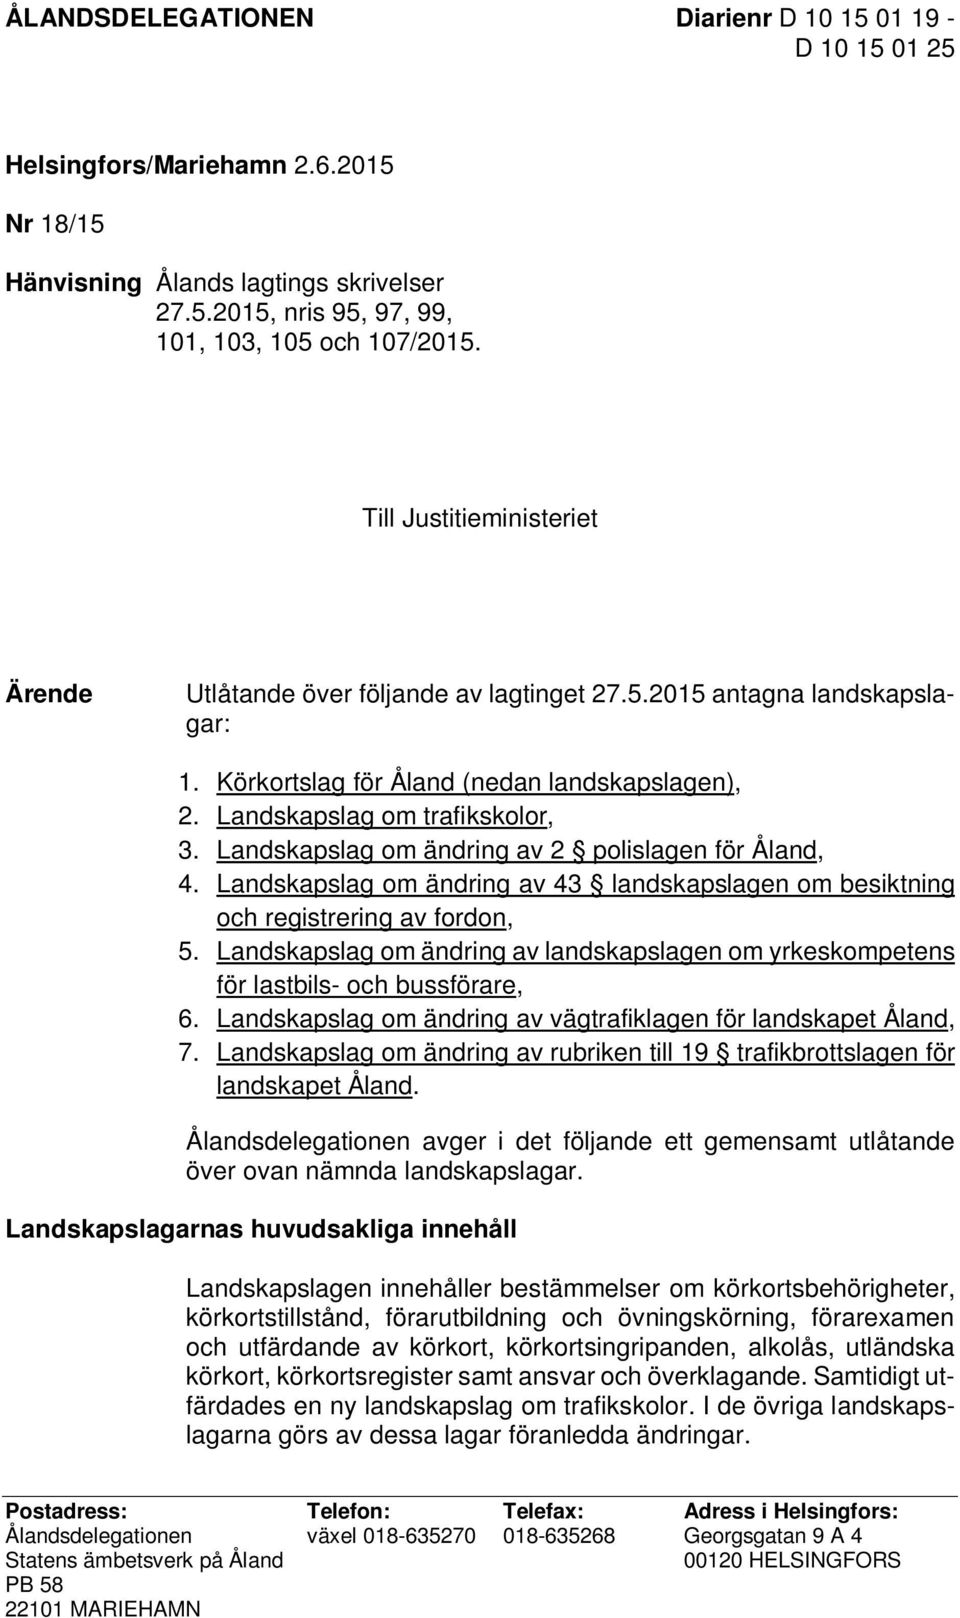 Landskapslag om ändring av 2 polislagen för Åland, 4. Landskapslag om ändring av 43 landskapslagen om besiktning och registrering av fordon, 5.